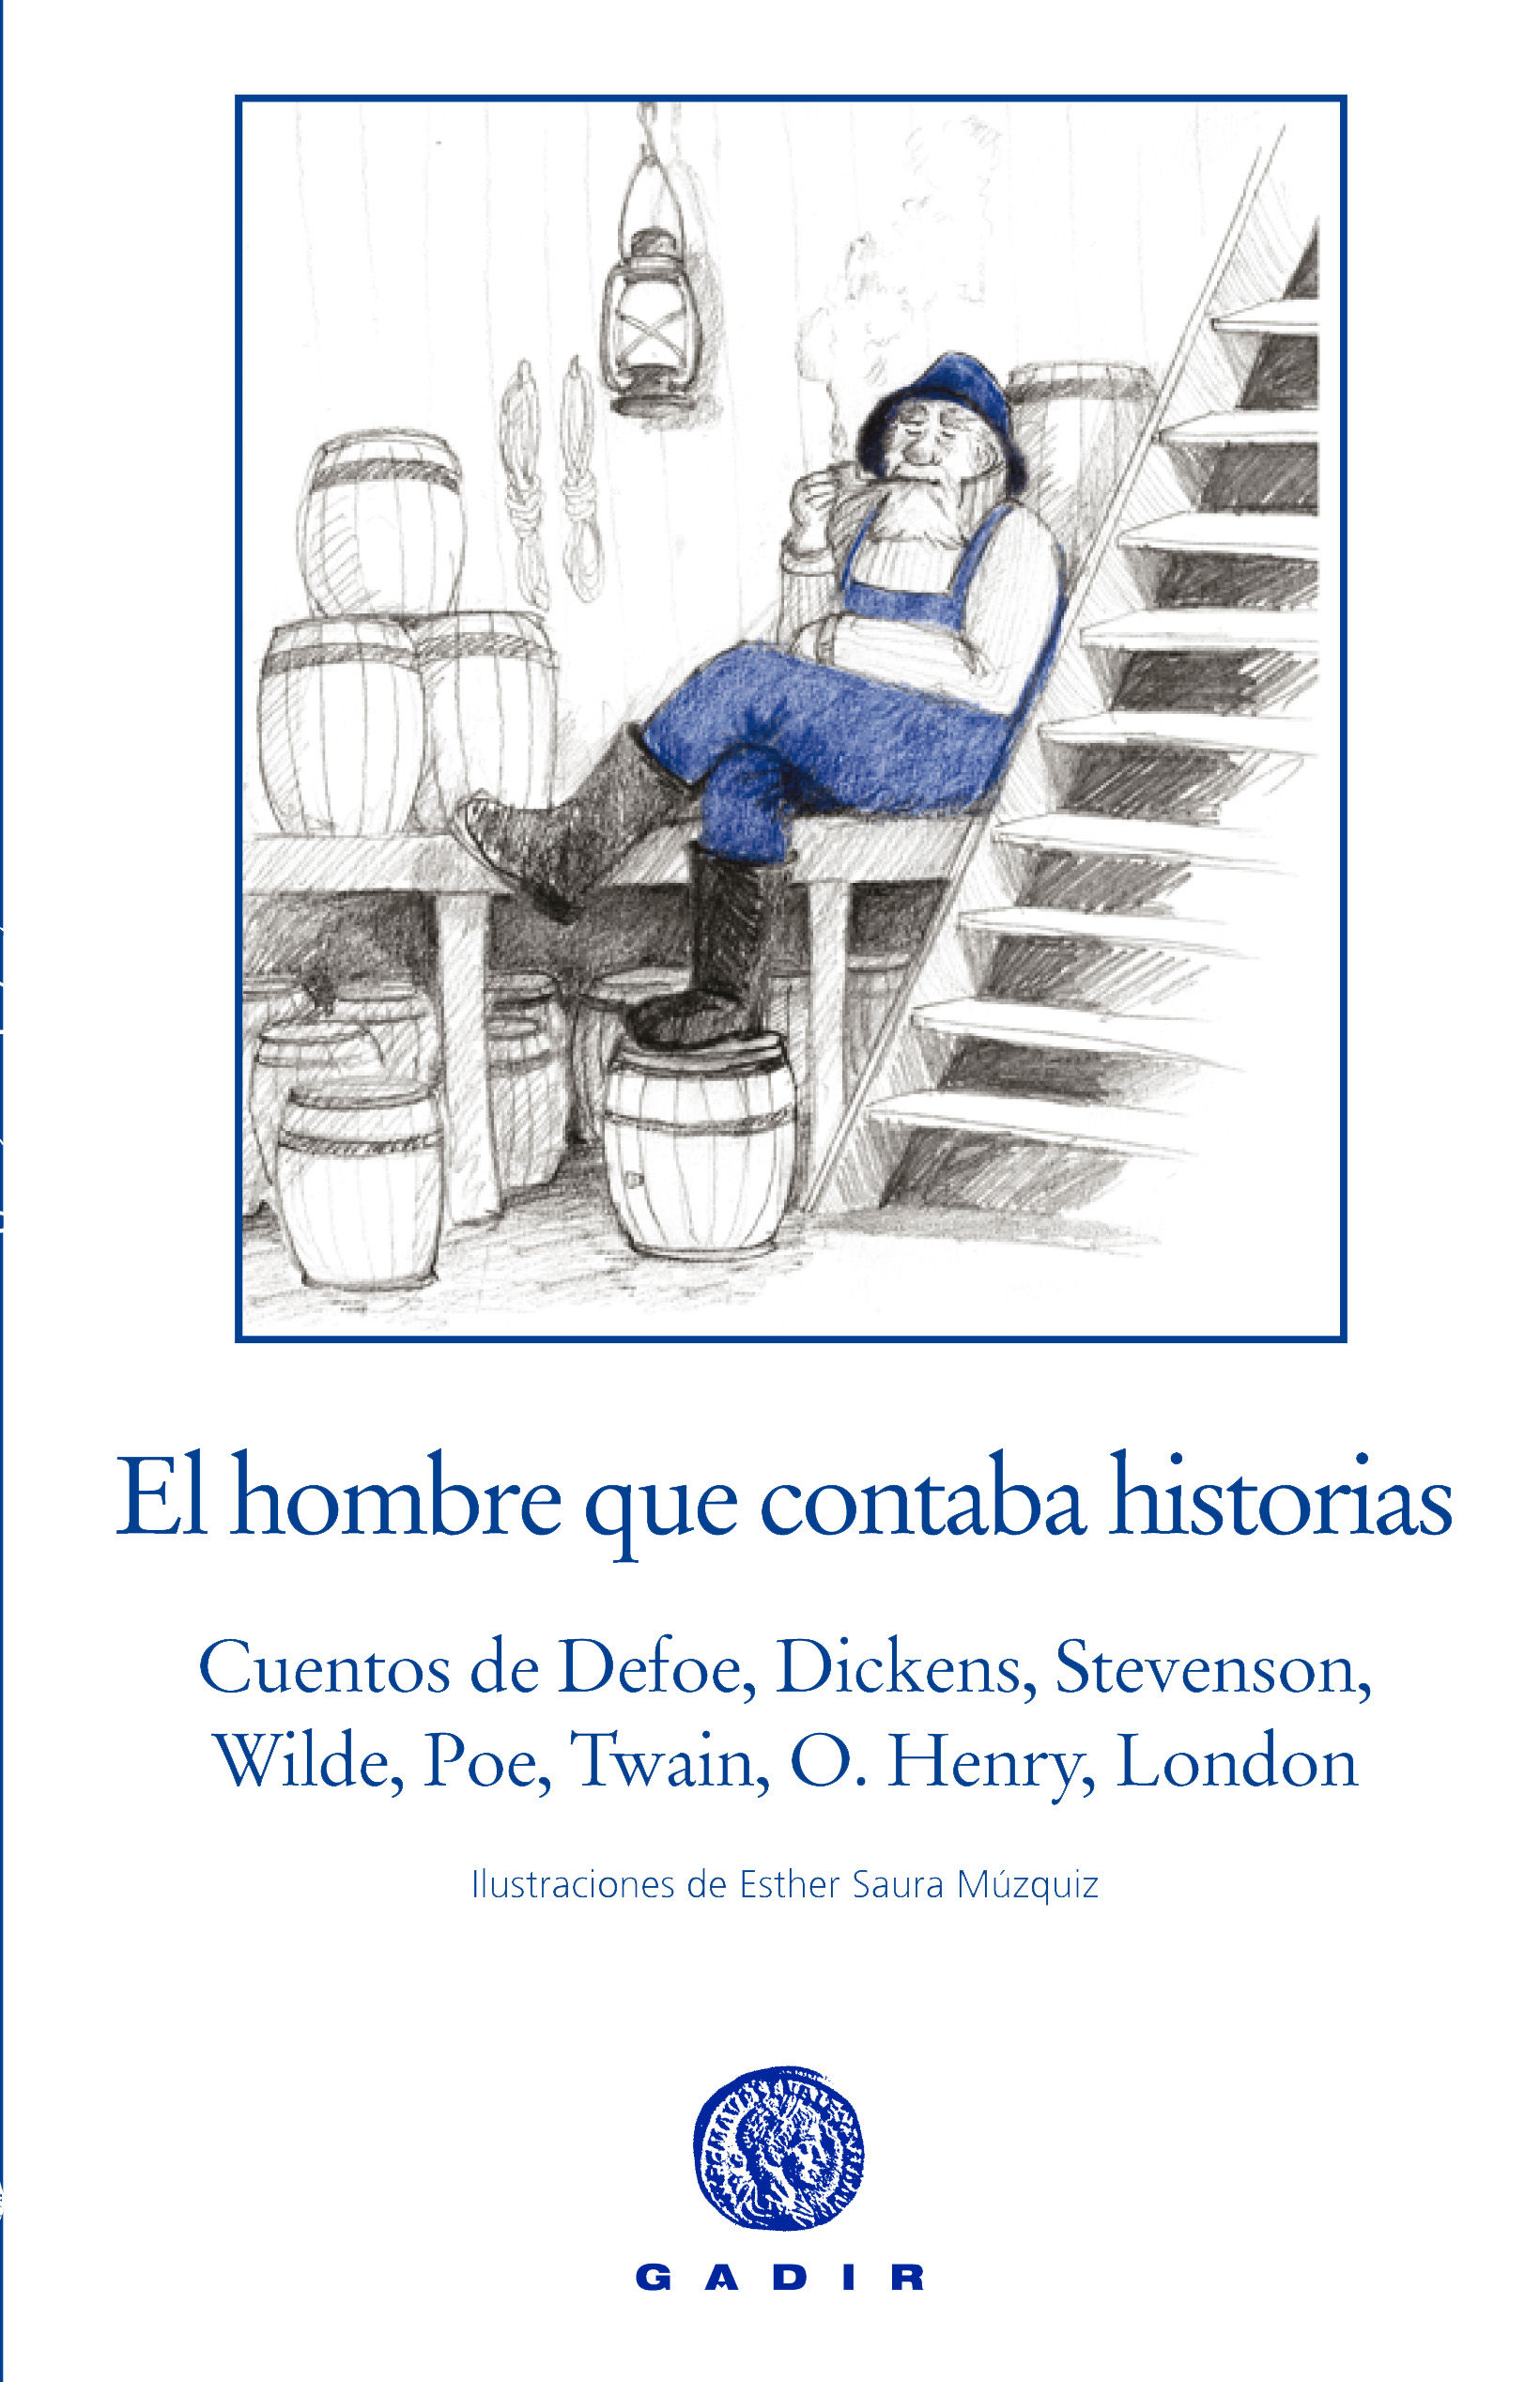 EL HOMBRE QUE CONTABA HISTORIAS. CUENTOS DE DEFOE, DICKENS, STEVENSON, WILDE, POE, TWAIN, O. HENRY, LONDON